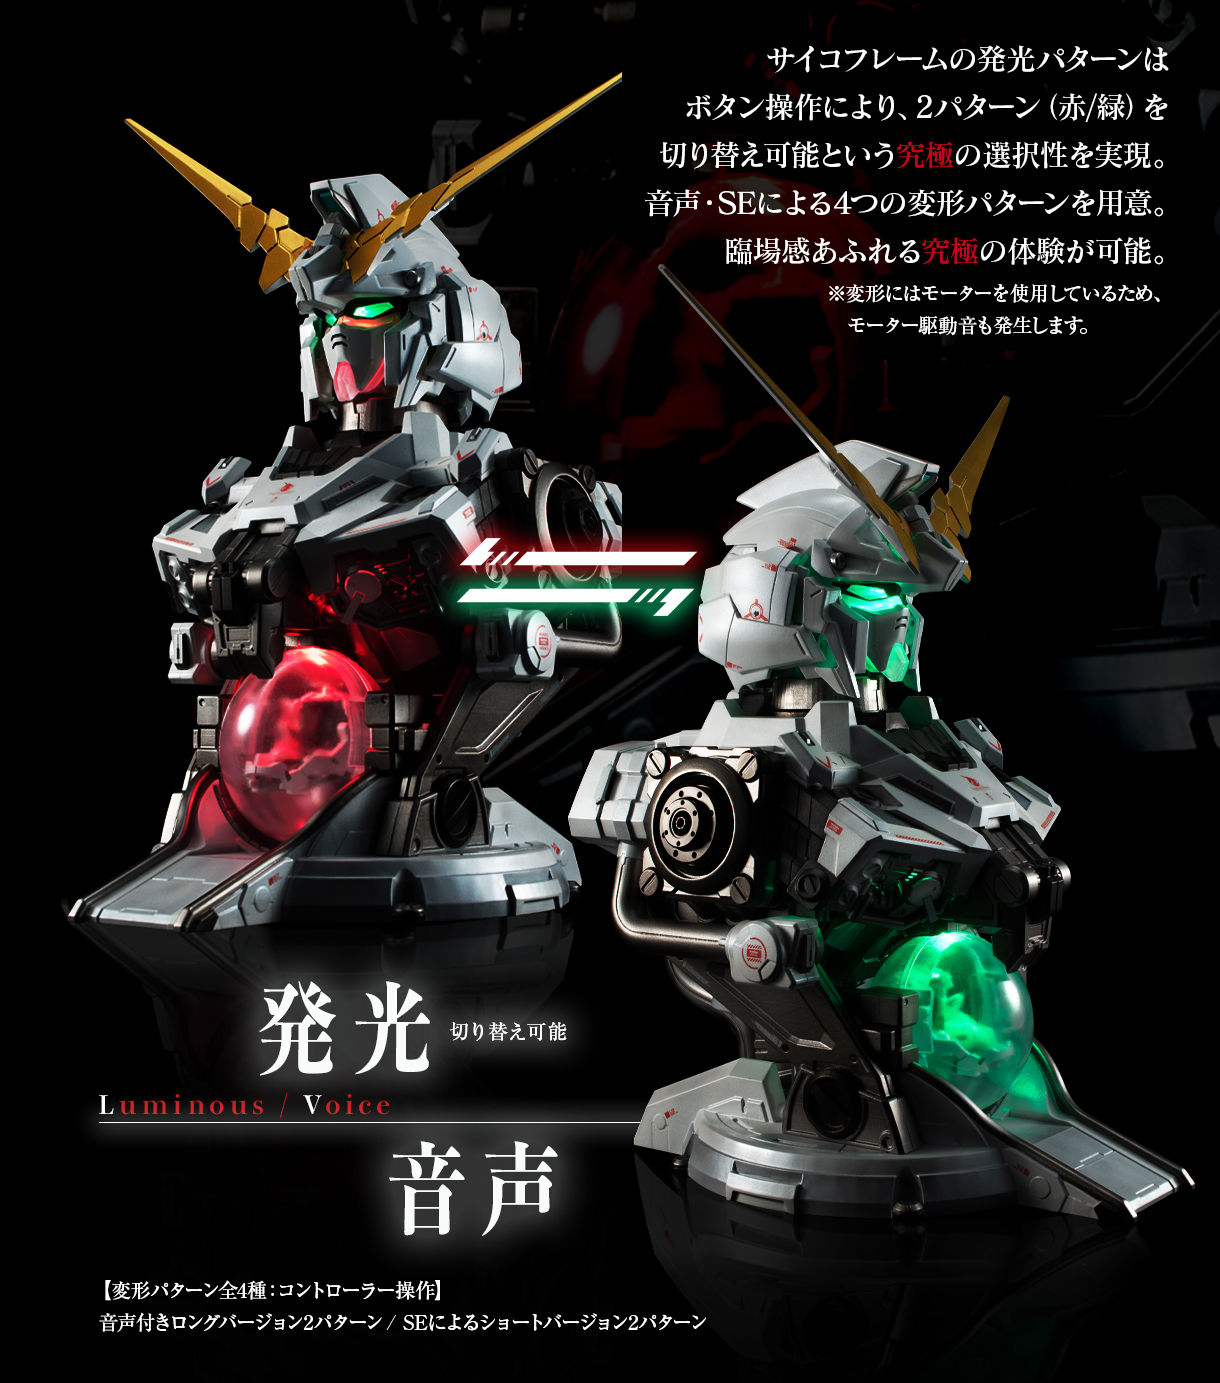 Ultimate Mechanix Unicorn Gundam 機動戦士ガンダムuc ユニコーン 趣味 コレクション バンダイナムコグループ公式通販サイト